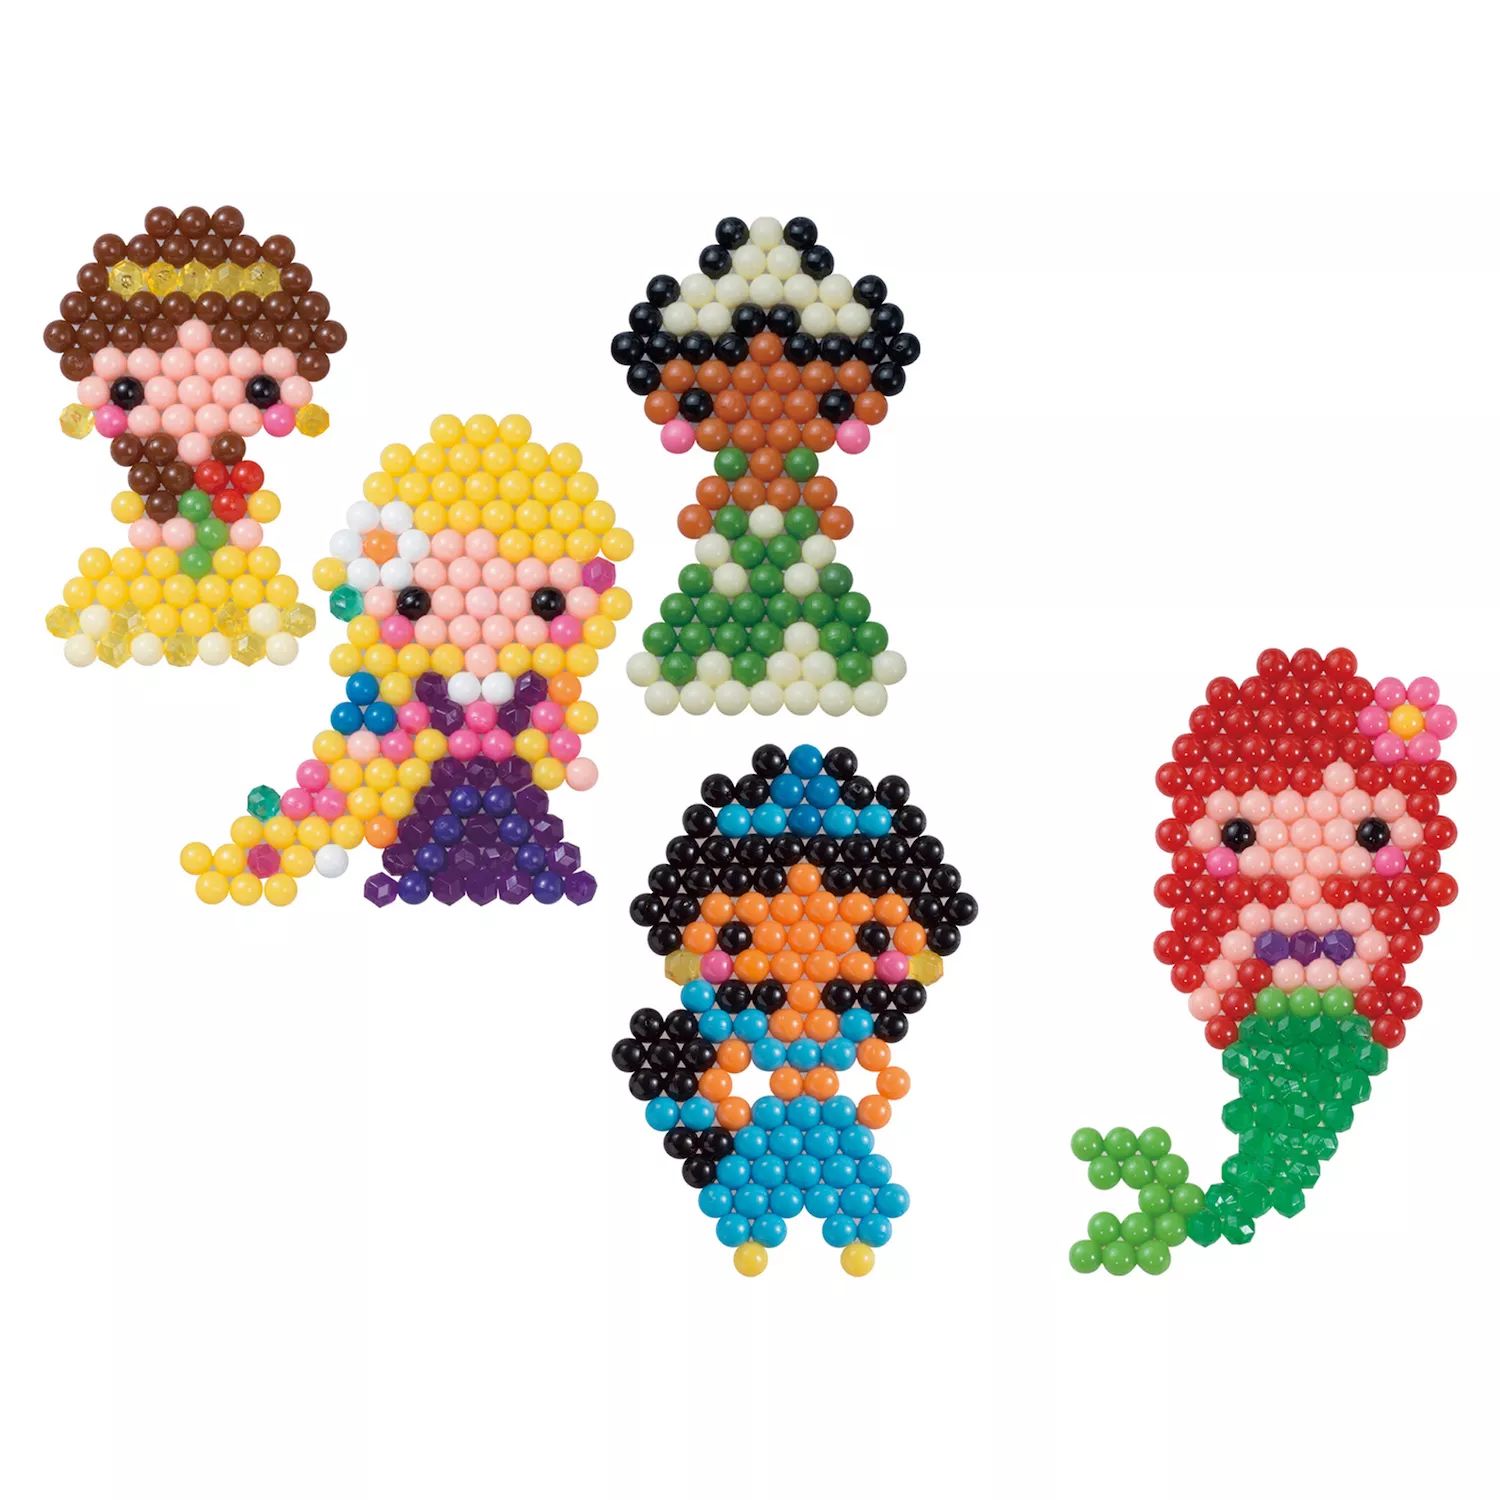 Набор персонажей Disney Princess Aquabeads, полный набор для творчества и рукоделия для детей от Aquabeads